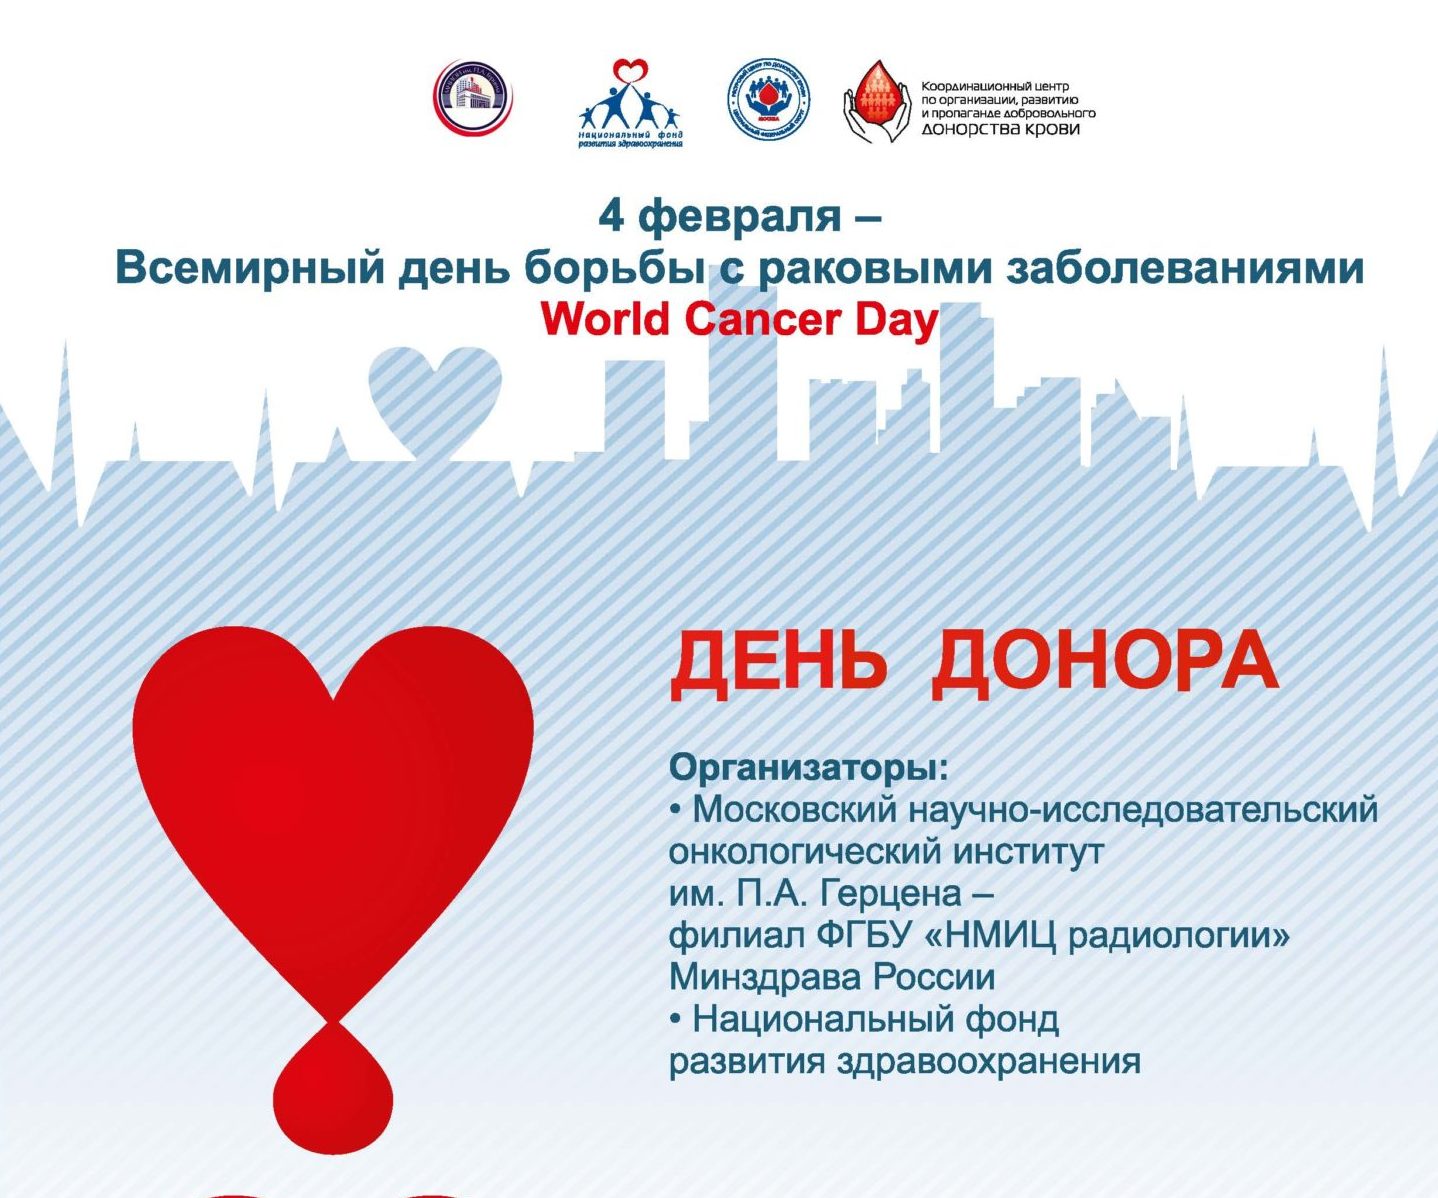 Национальный день донора крови. Всемирный день донорства. Всемирный день донора крови. День донора афиша. Всемирный день донора поздравления.